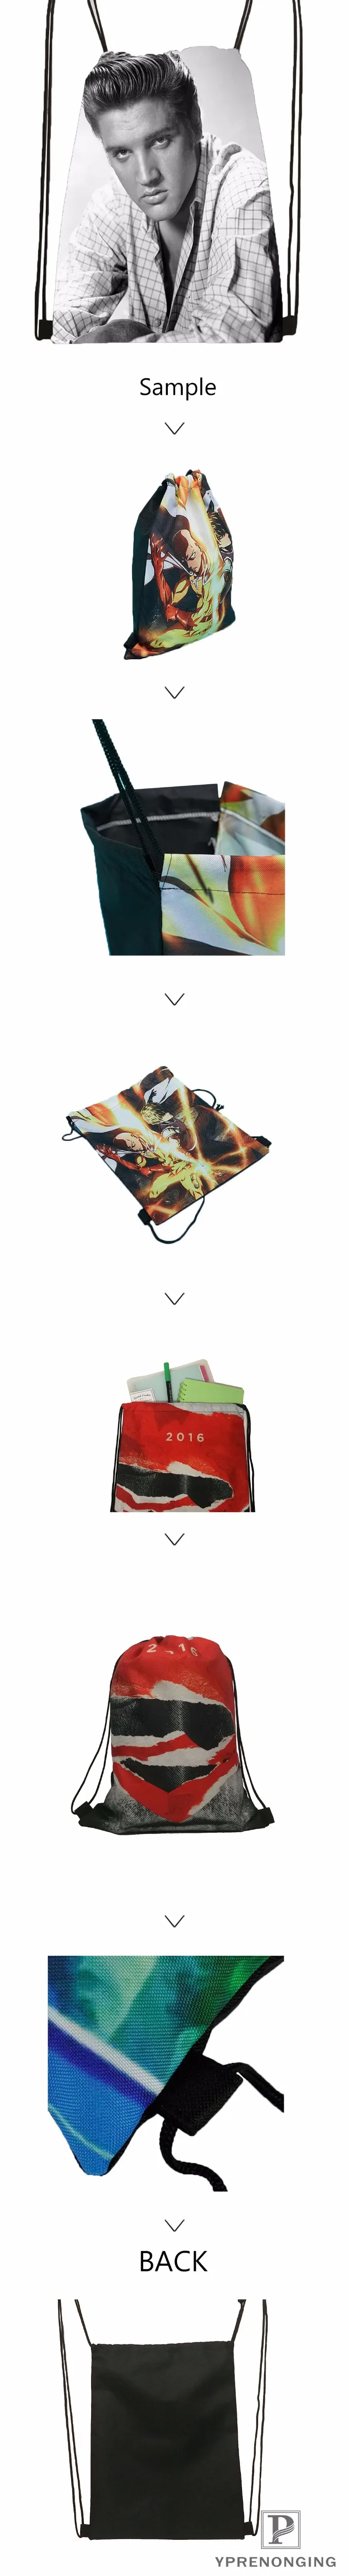 Пользовательские Бэтмен-логотип-походная сумка на шнурке для мужчин и женщин милый рюкзак дети ранец(черная спина) 31x40 см#20180611-03-159